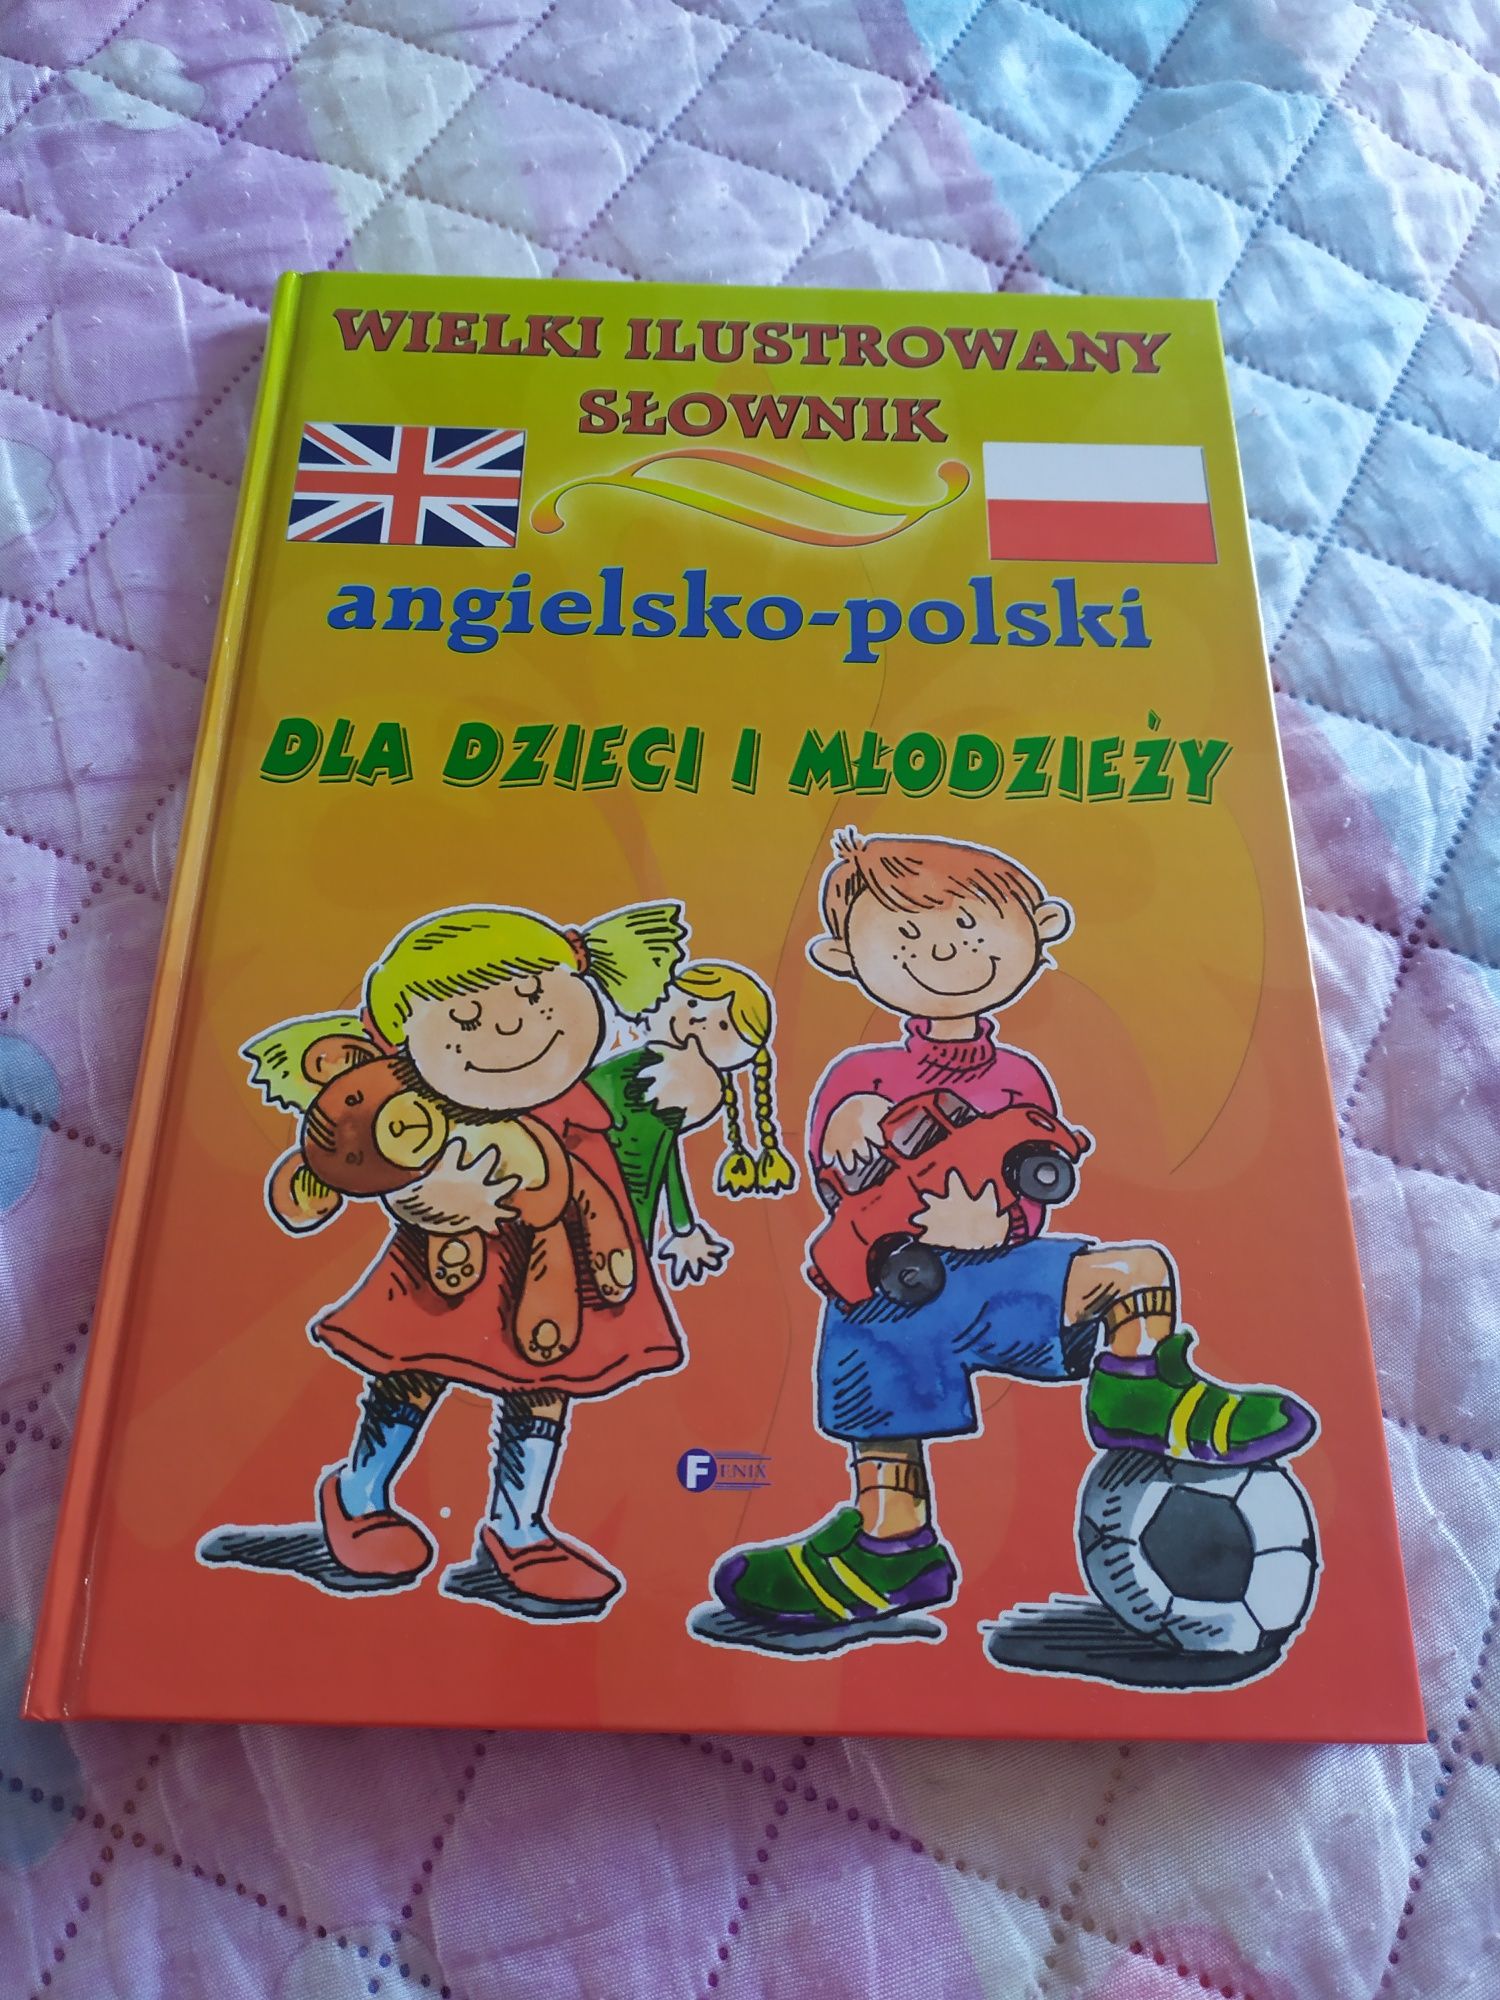 Słownik ilustrowany angielsko-polski dla dzieci i młodzieży, Fenix